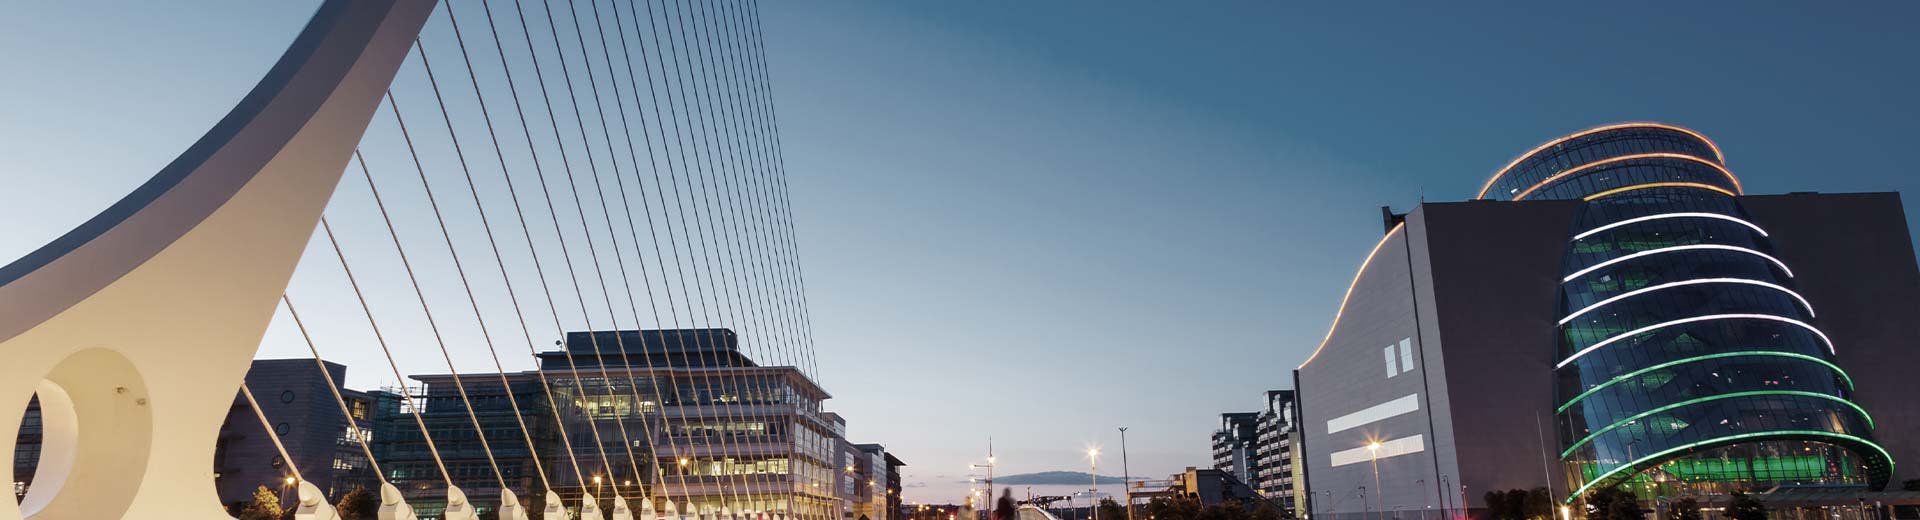 Edificios comerciales y un puente moderno durante una parte más oscura del día en Dublín.